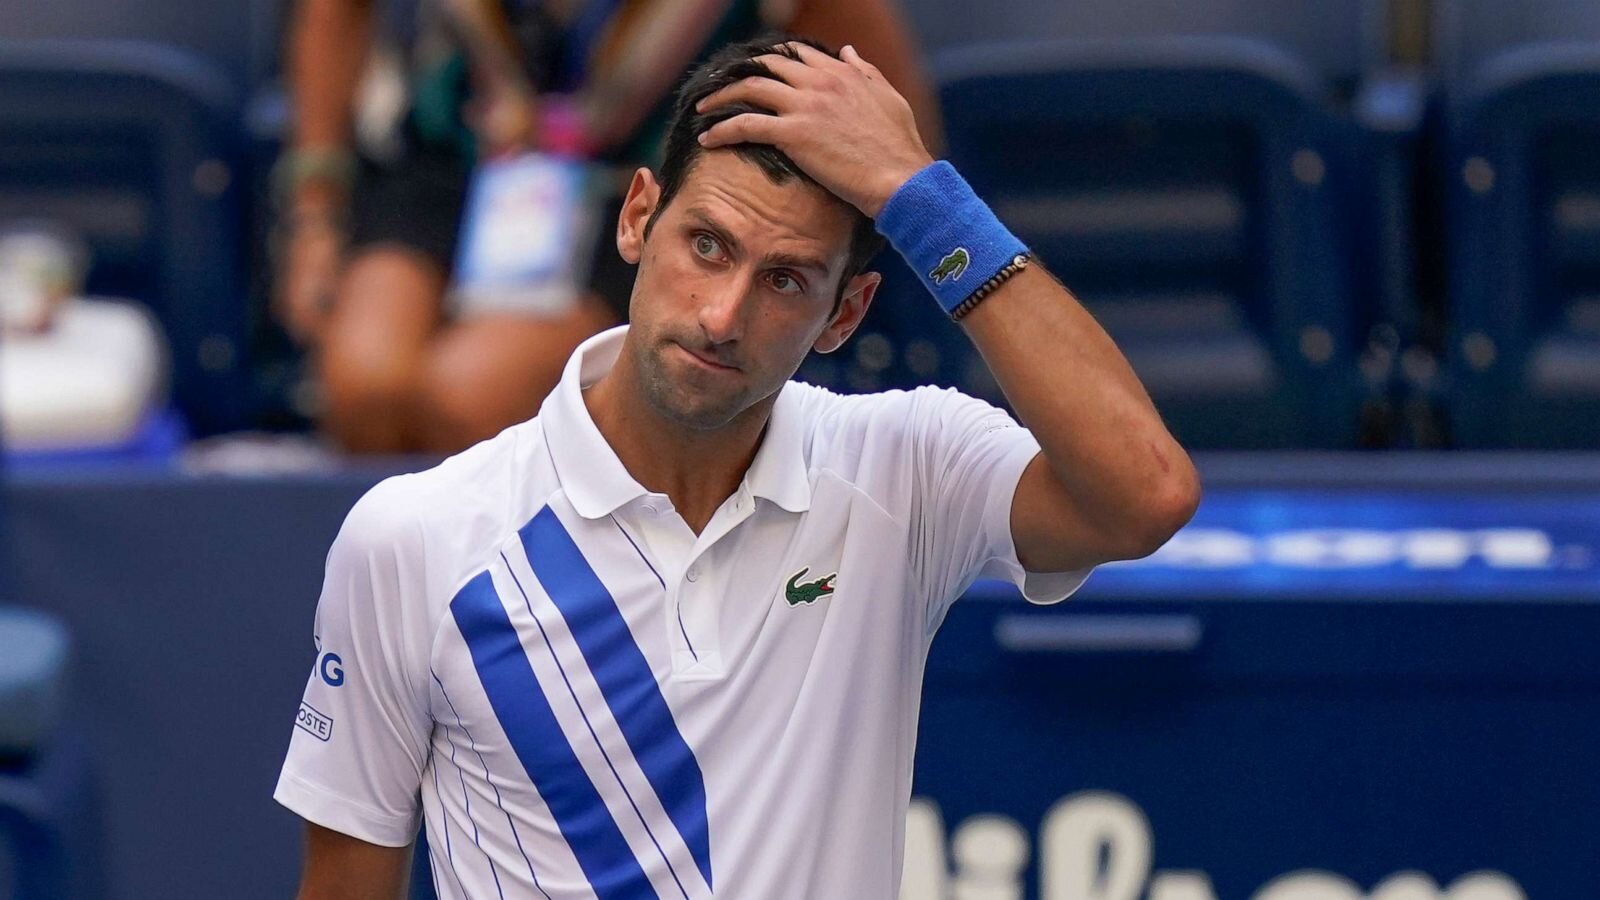 Novak Djokovic's list of demands rejected in Australian Open 2021